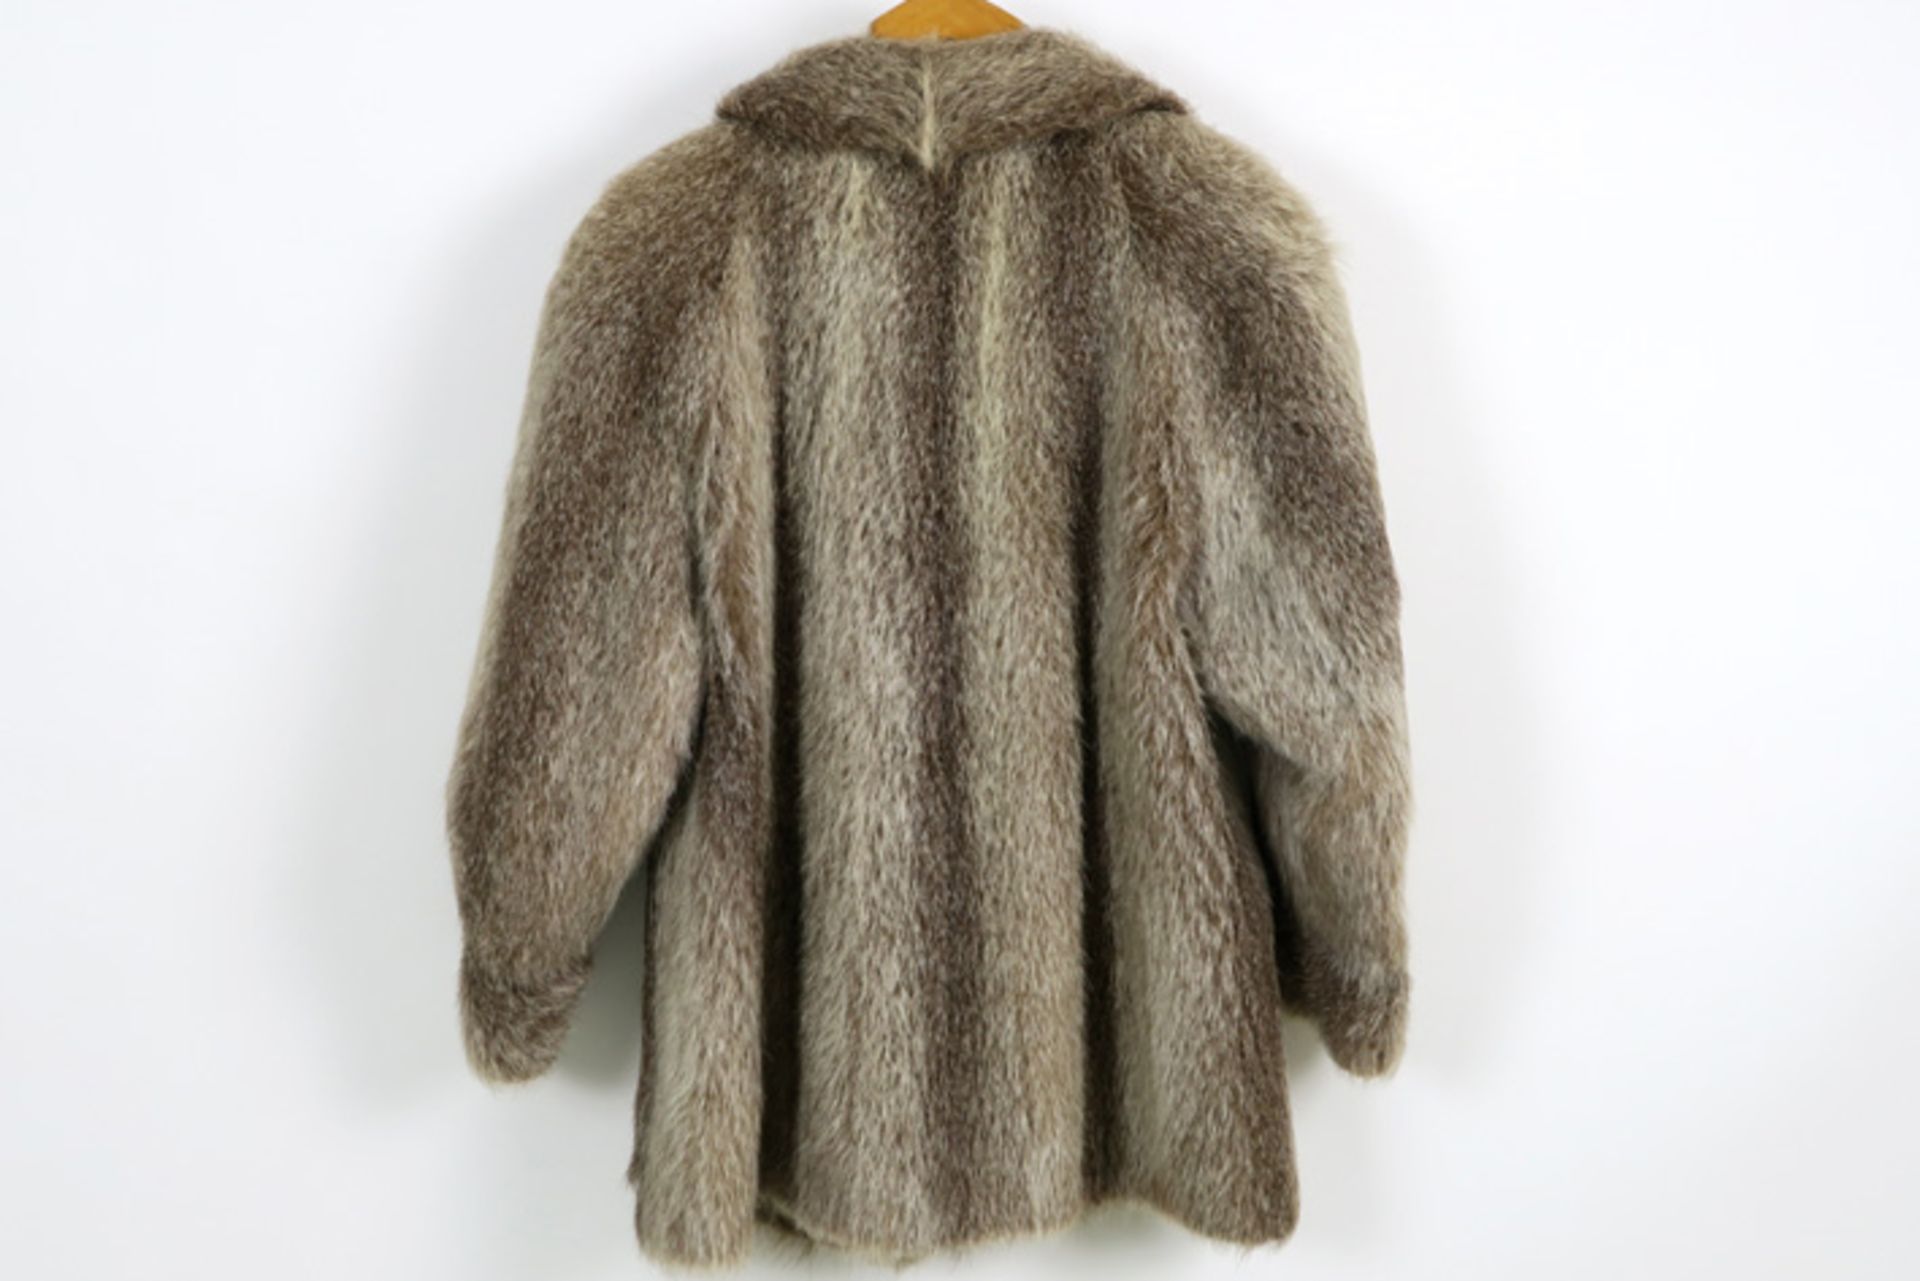 fur coat of muskrat||Vest in bont van muskusrat - Image 2 of 2